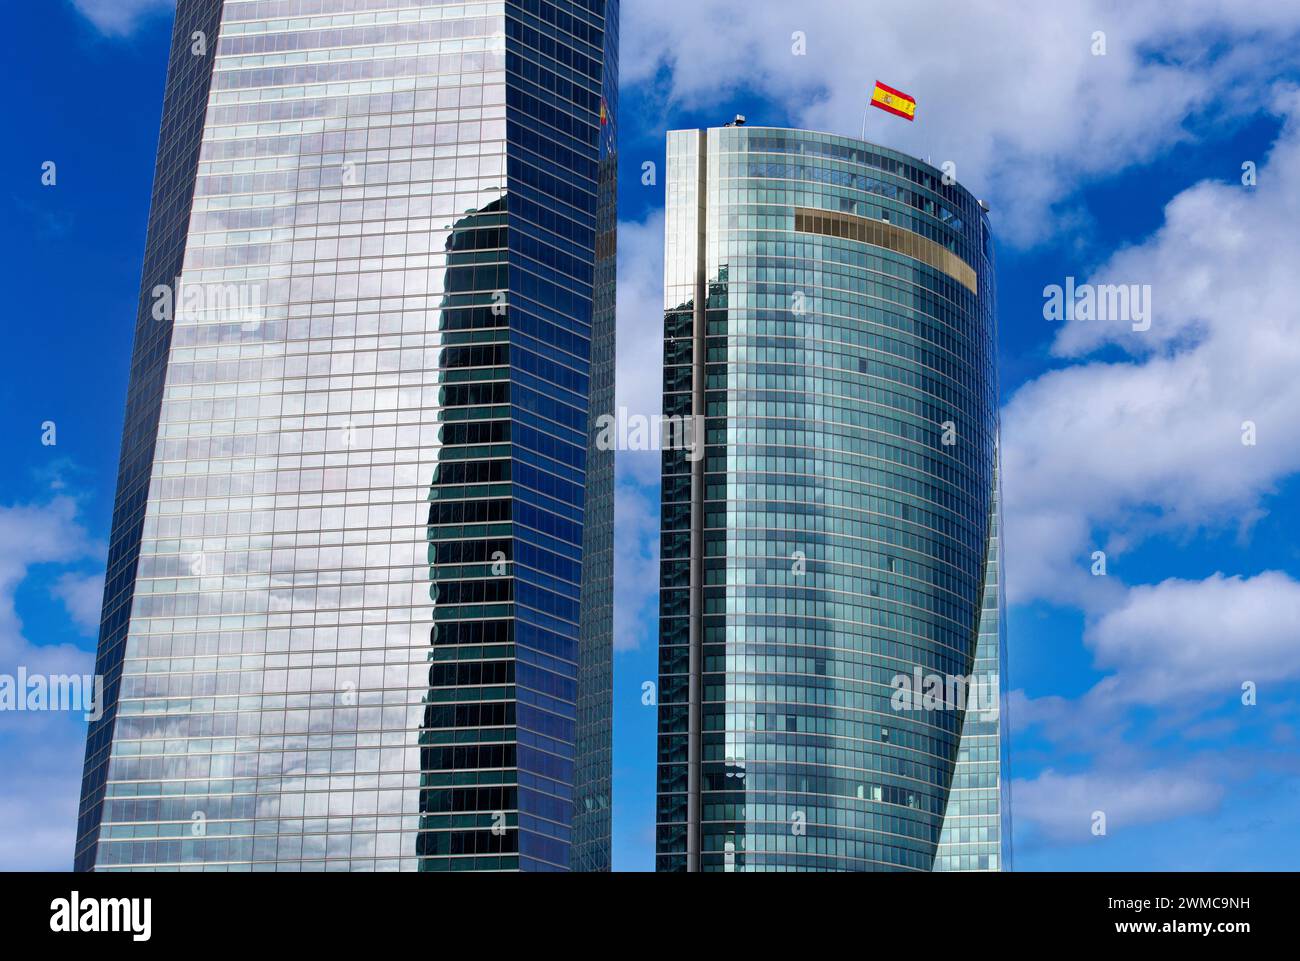 Torre de Cristal y Torre Espacio, CTBA, Cuatro Torres Business Area, Madrid, Spagna, Europa Foto Stock